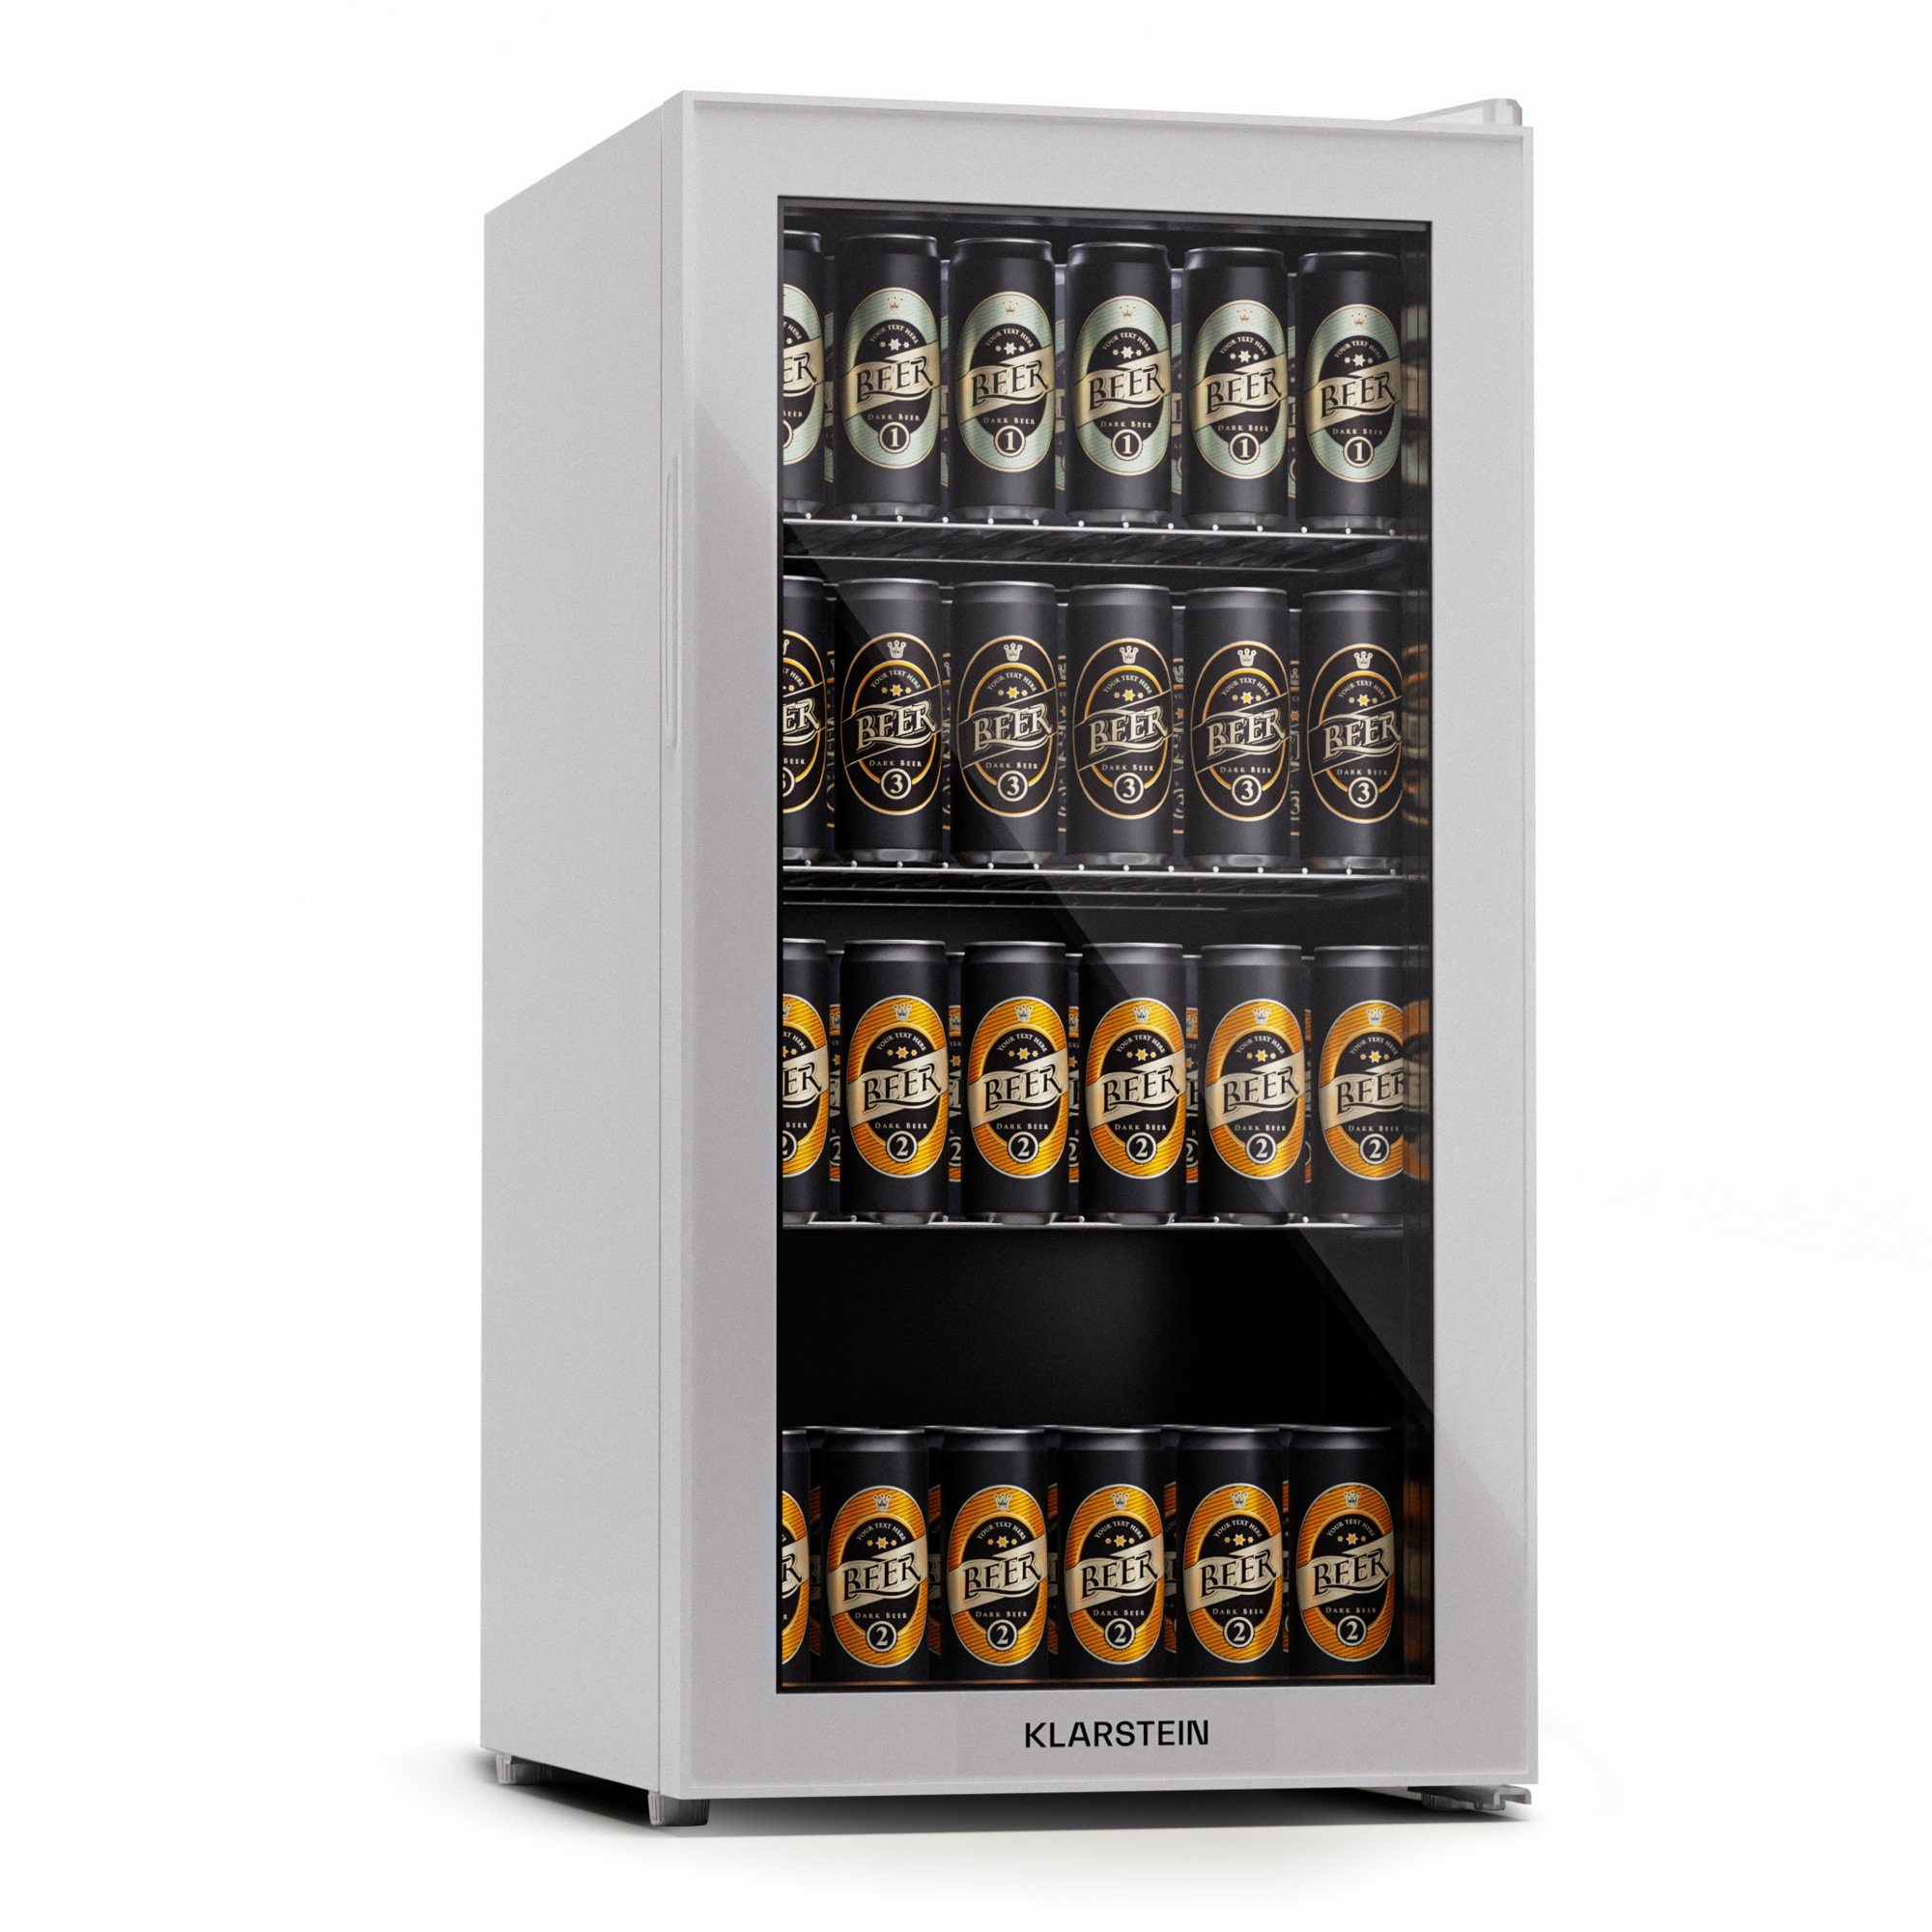 Klarstein Getränkekühlschrank HEA-Bersafe-74-wh 10045533A, 84 cm hoch, 43 cm breit, Bier Hausbar Getränkekühlschrank Flaschenkühlschrank Glastür Quartz